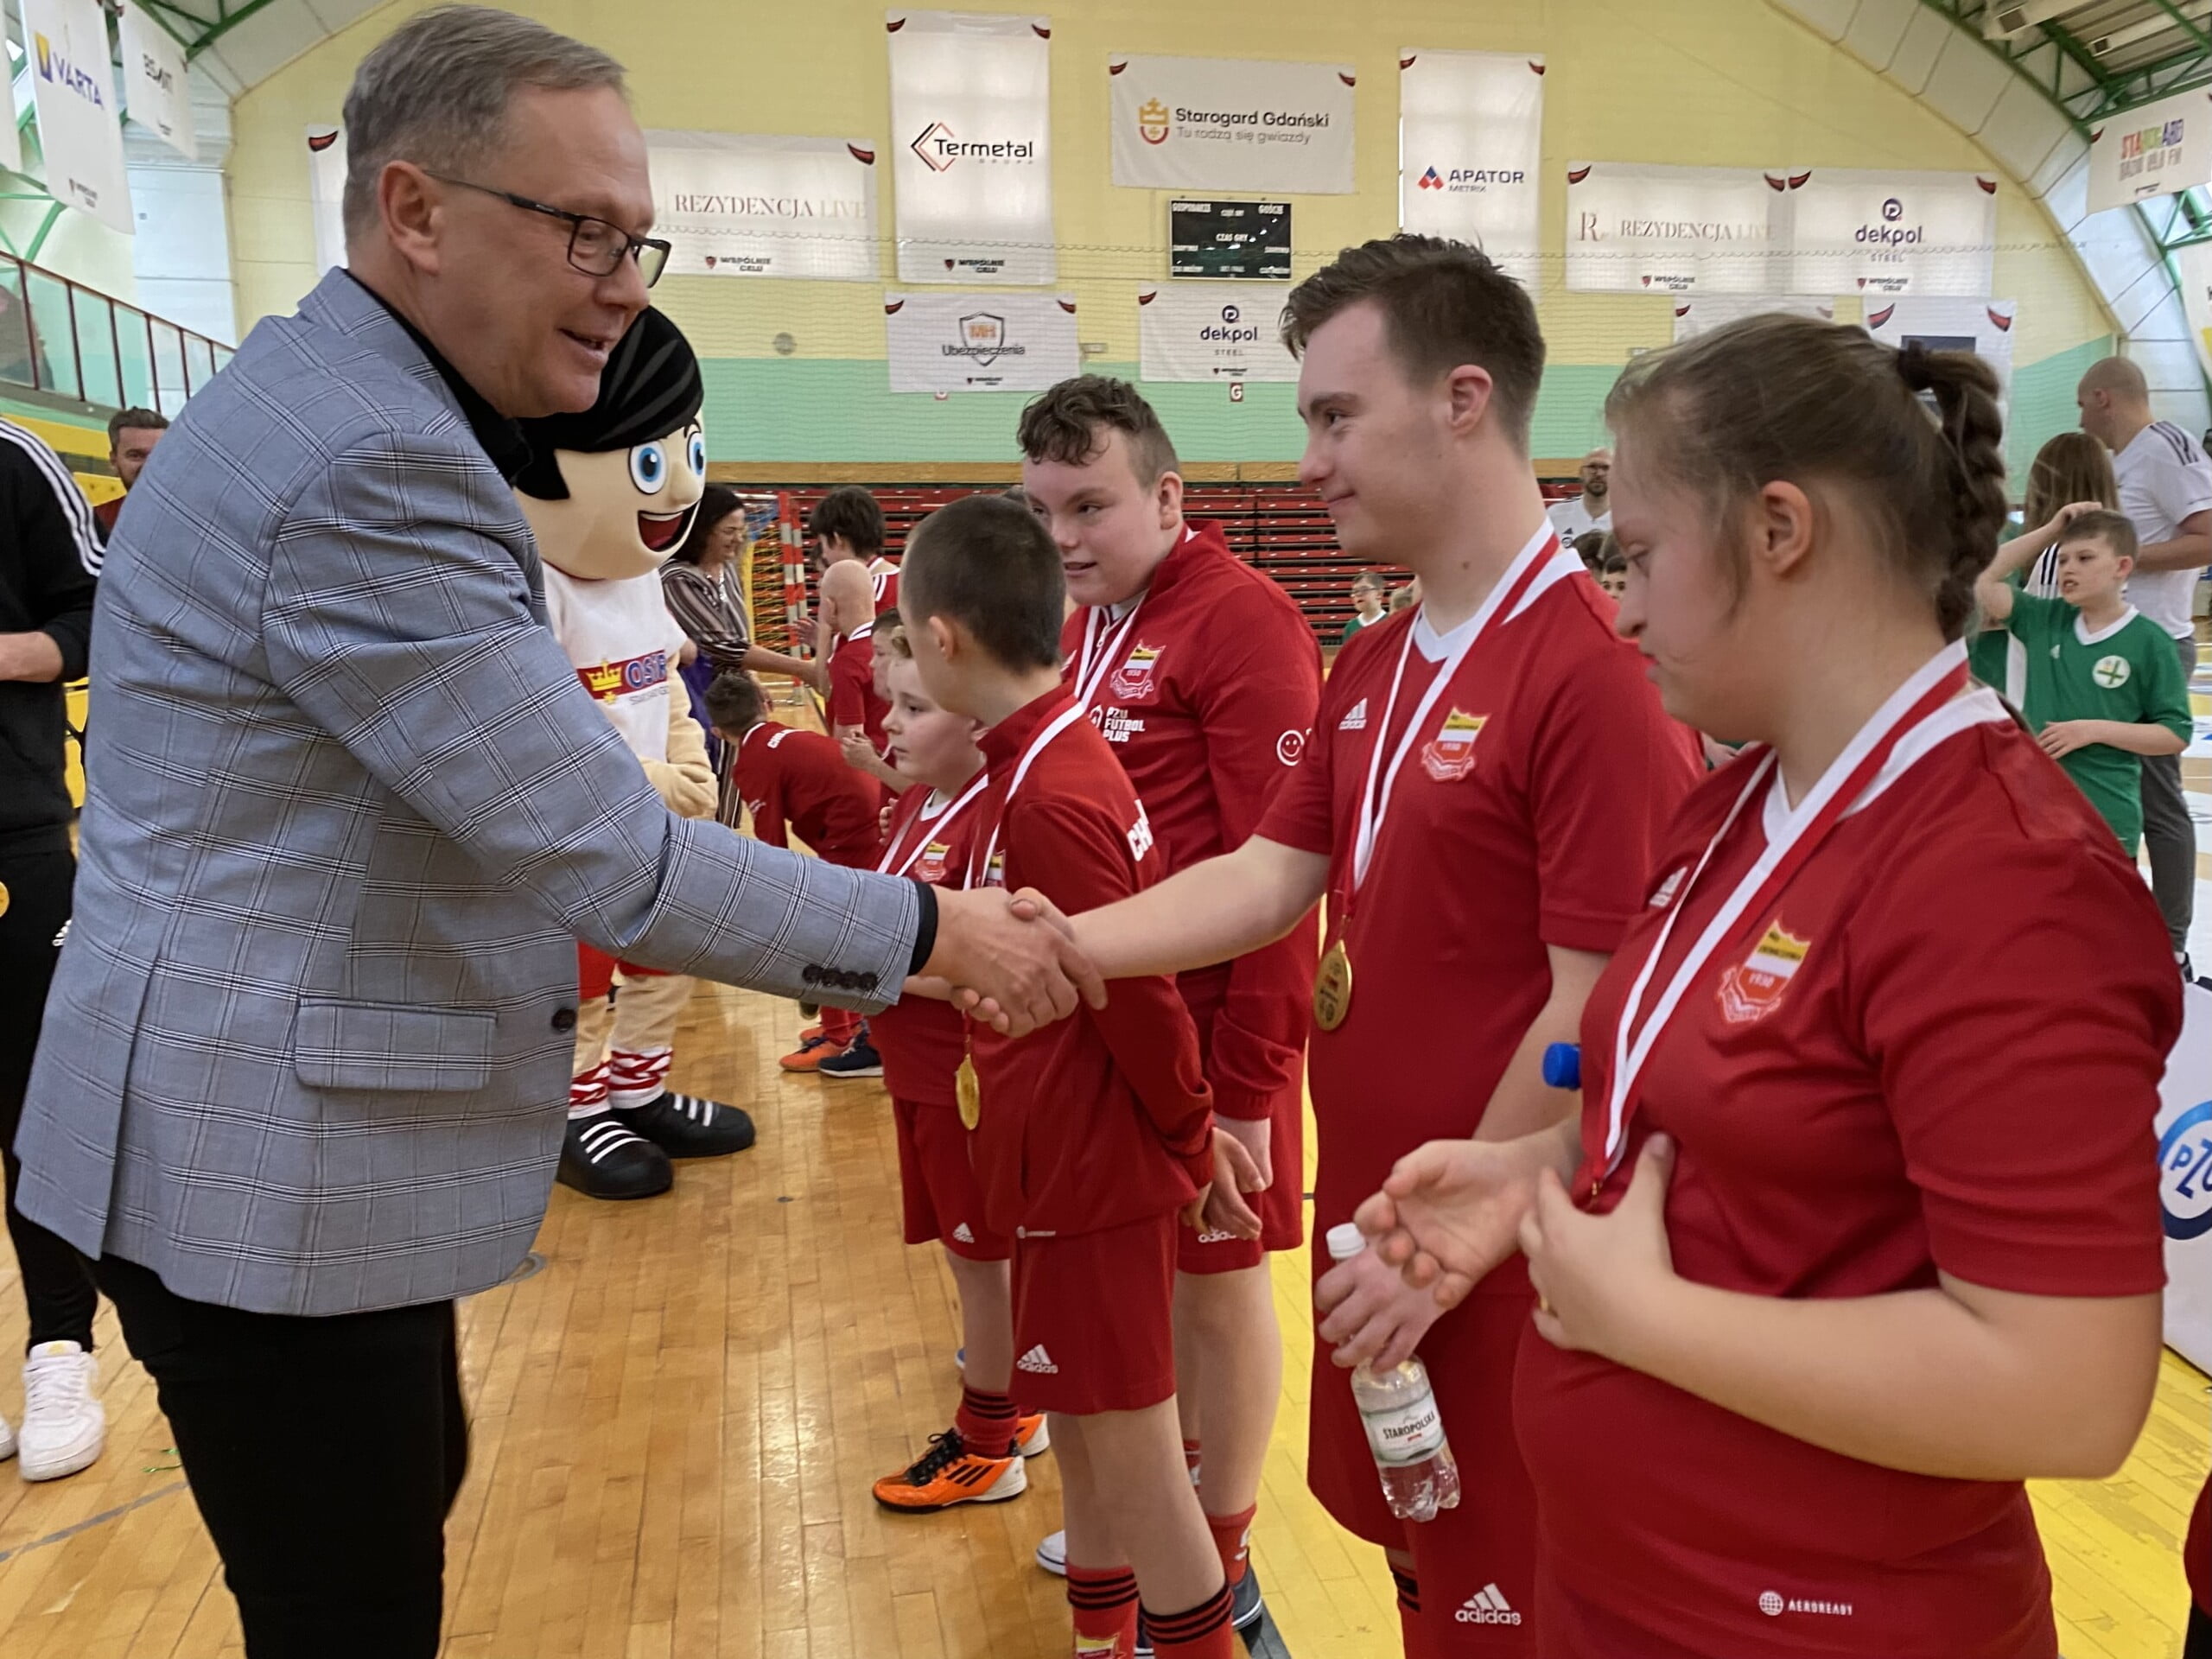  Prezydent Miasta Janusz Stankowiak składa gratulacje i wręcza medale zawodnikom.